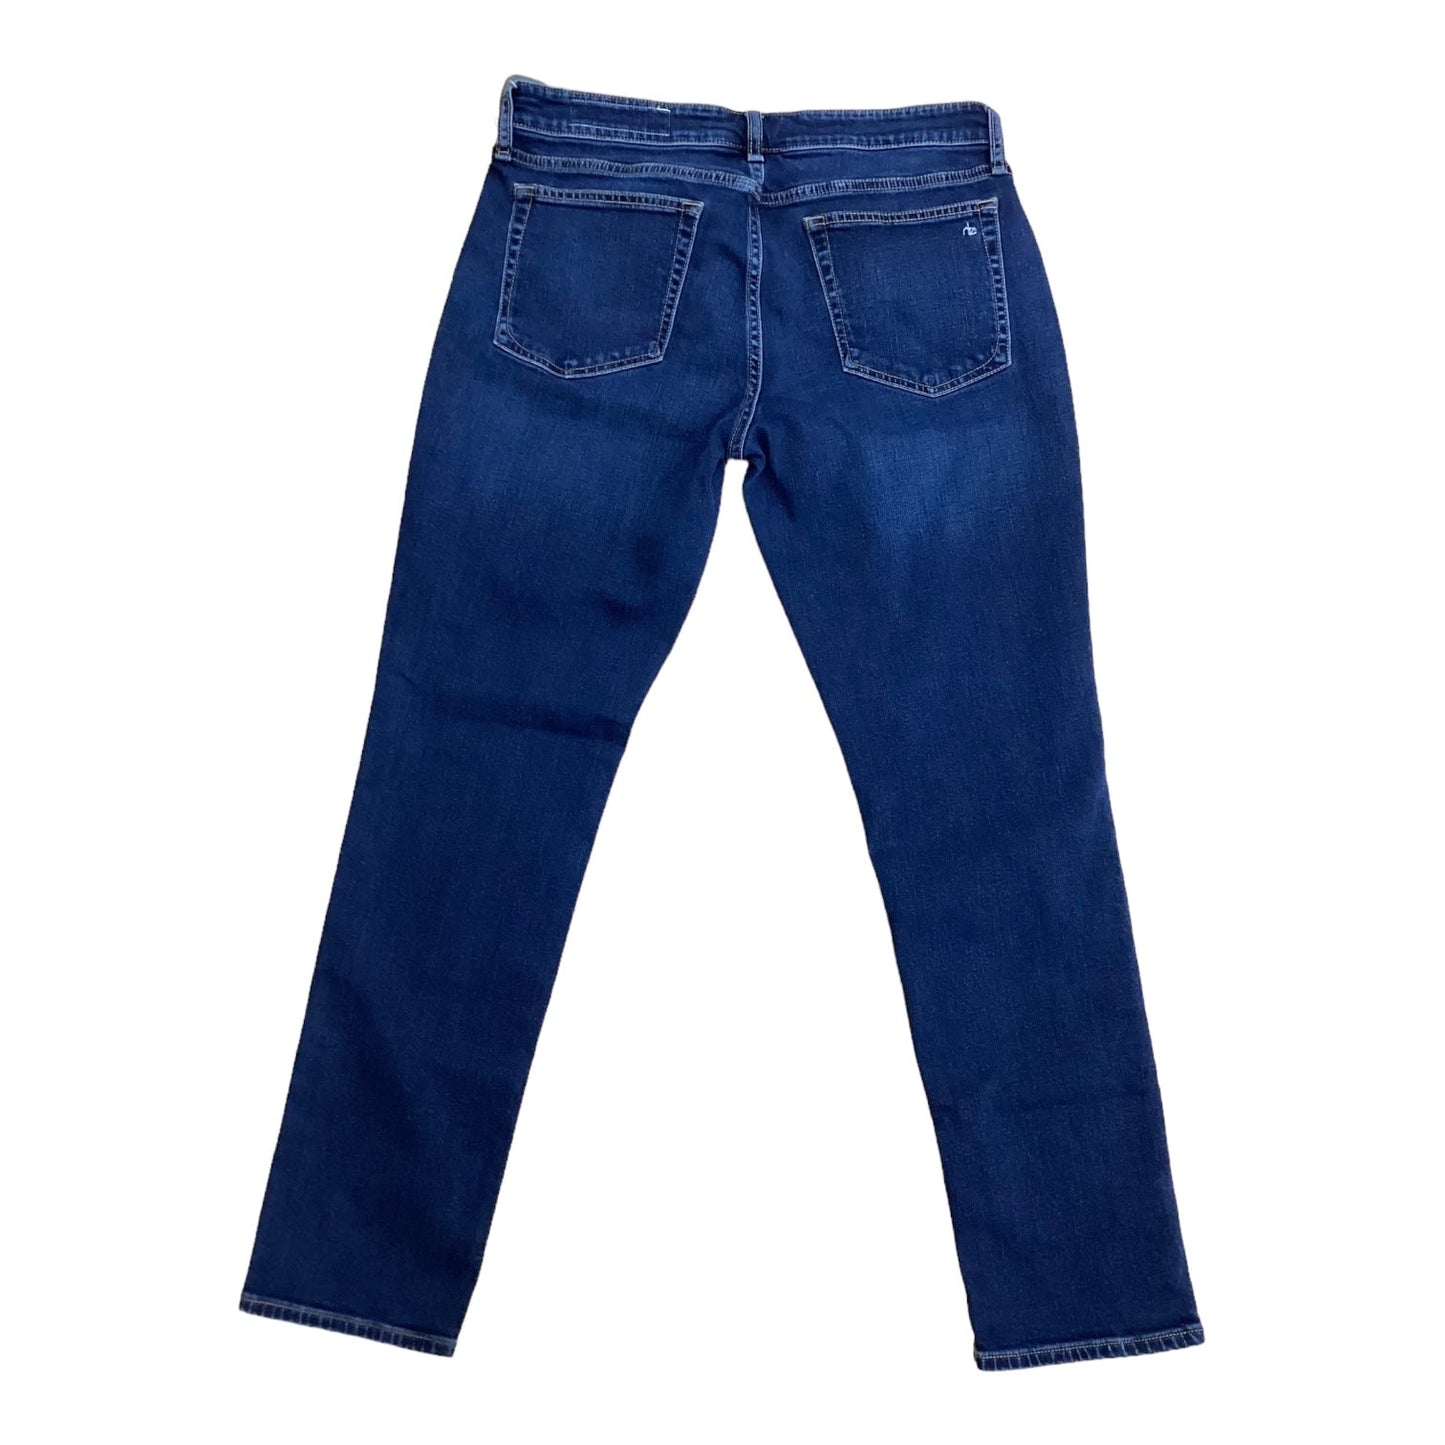 Blue Denim Jeans Designer Rag & Bones Jeans, Size 6